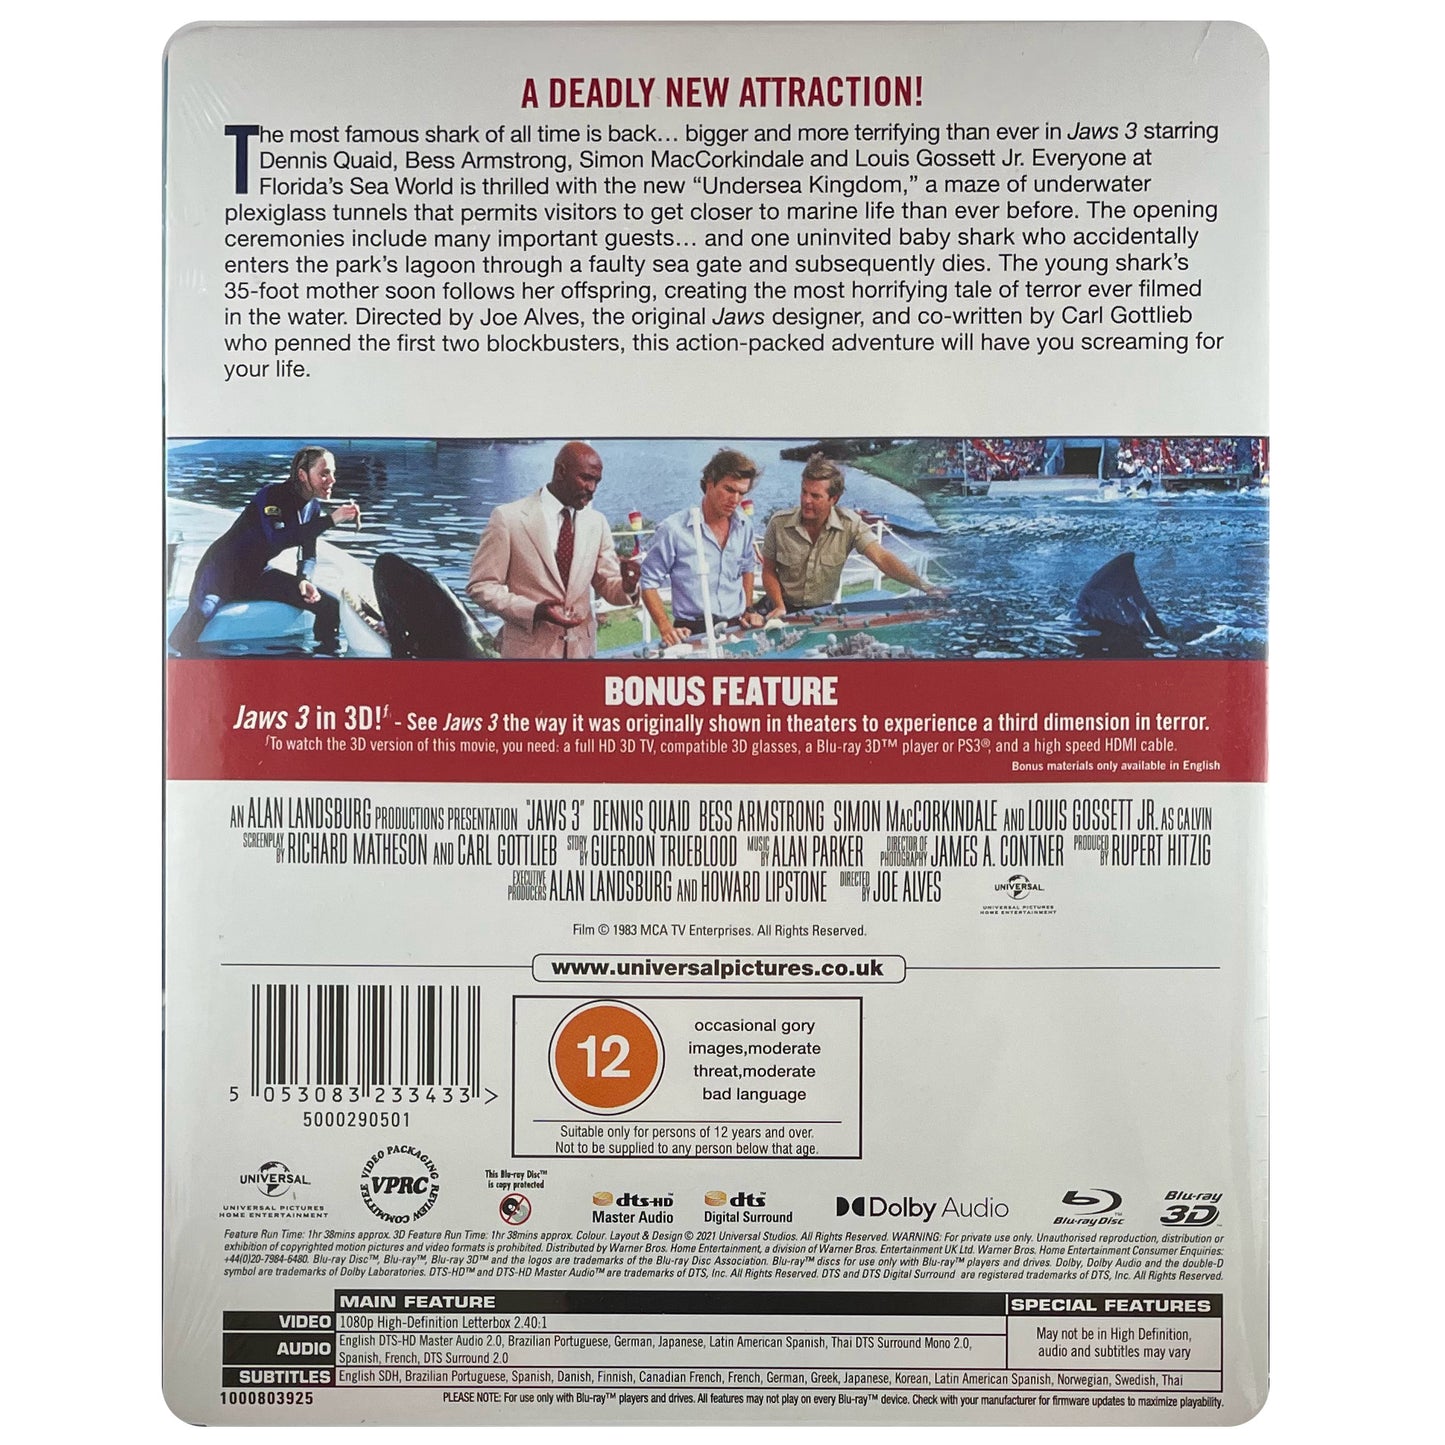 Jaws 3 Blu-Ray Steelbook